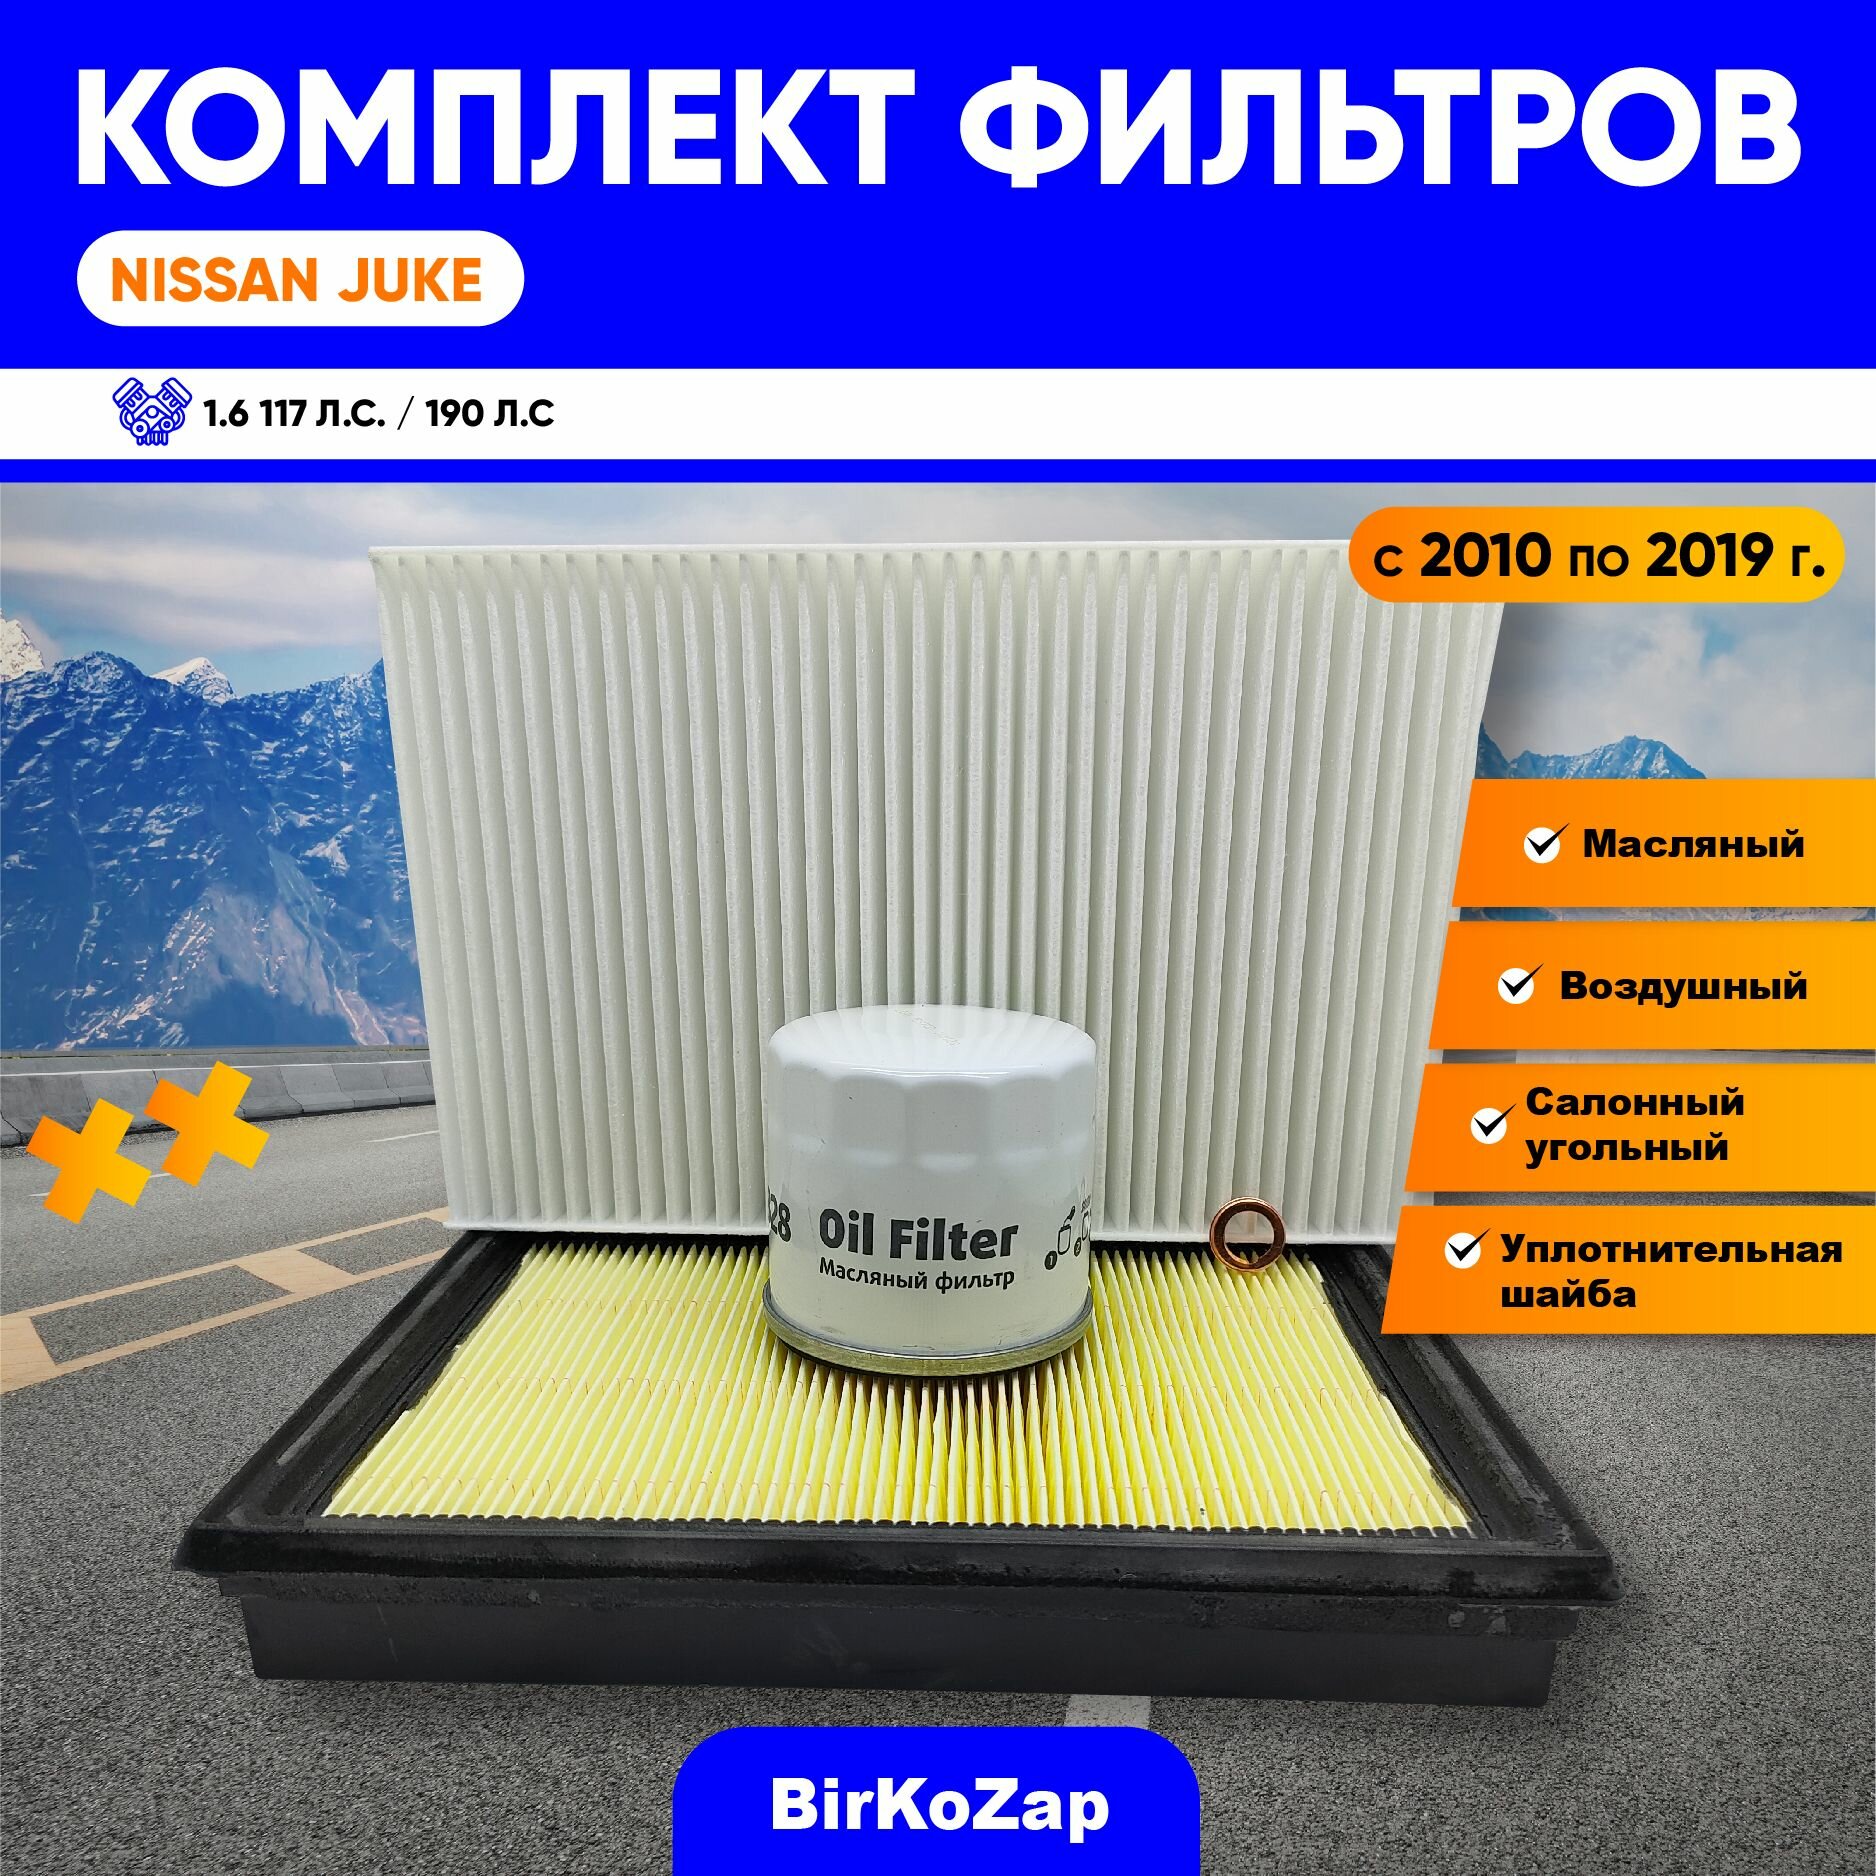 Комплект фильтров для ТО NISSAN JUKE (фильтр масляный, воздушный, салонный)